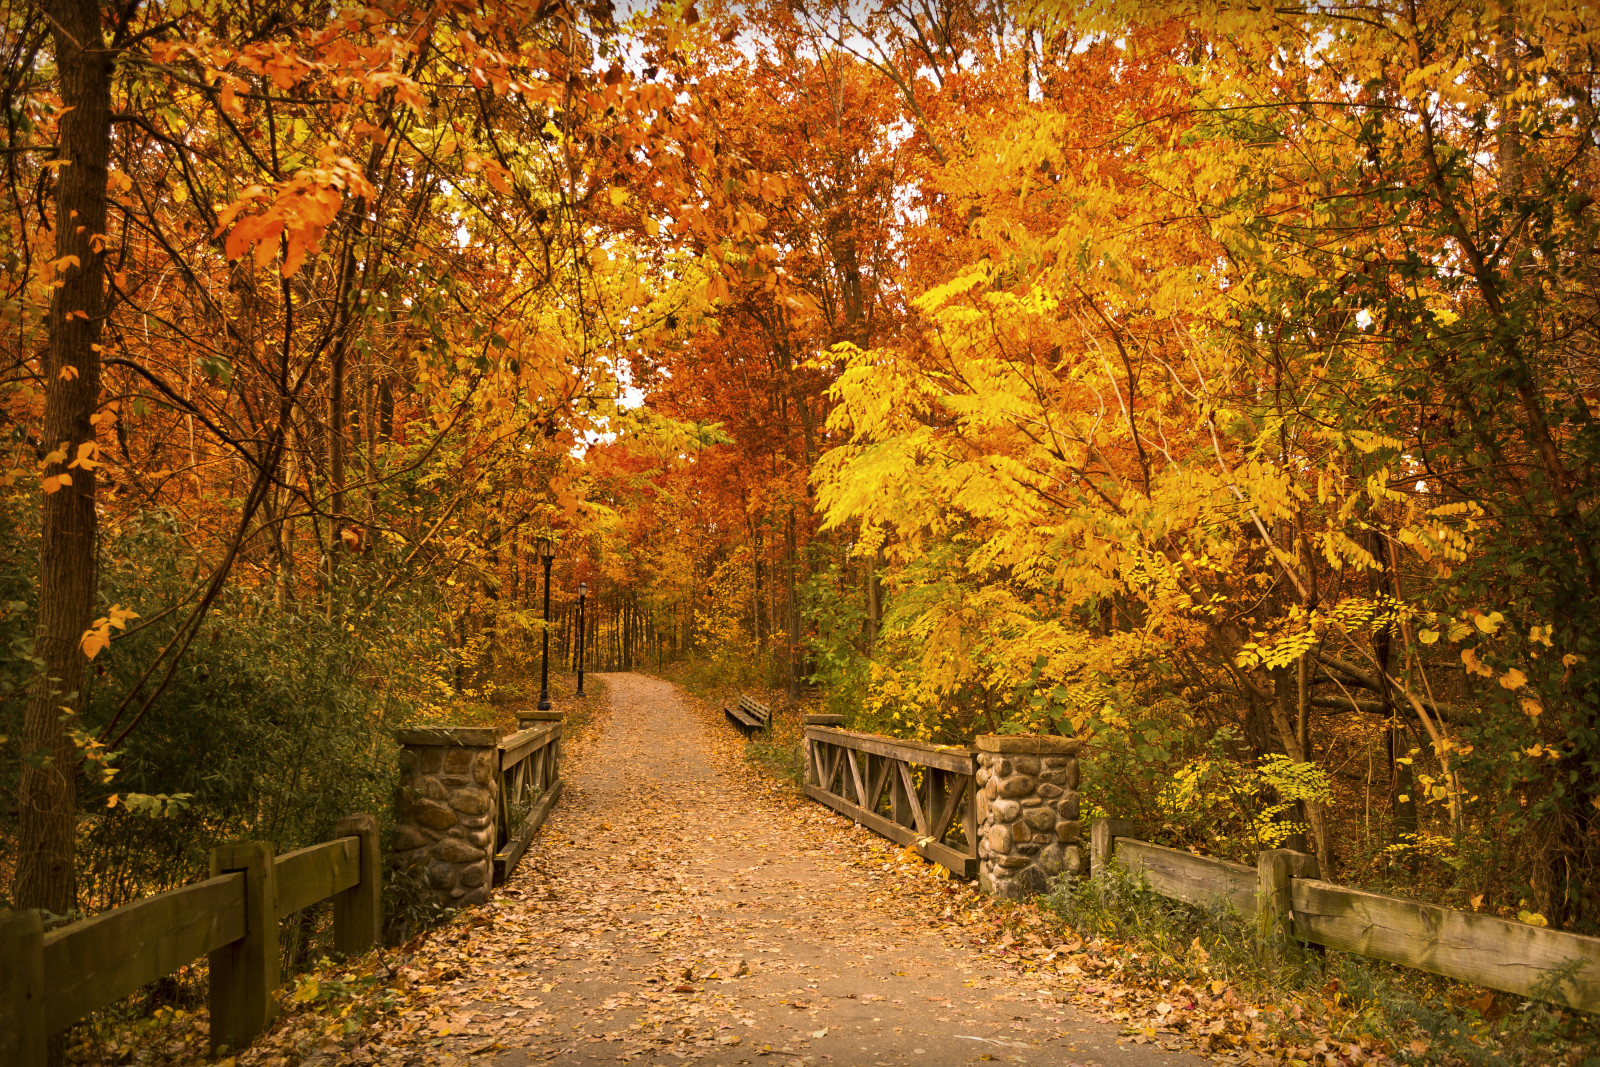 秋季, 公园, 树木, 树叶, 桥, 方式, 长椅, 灯柱